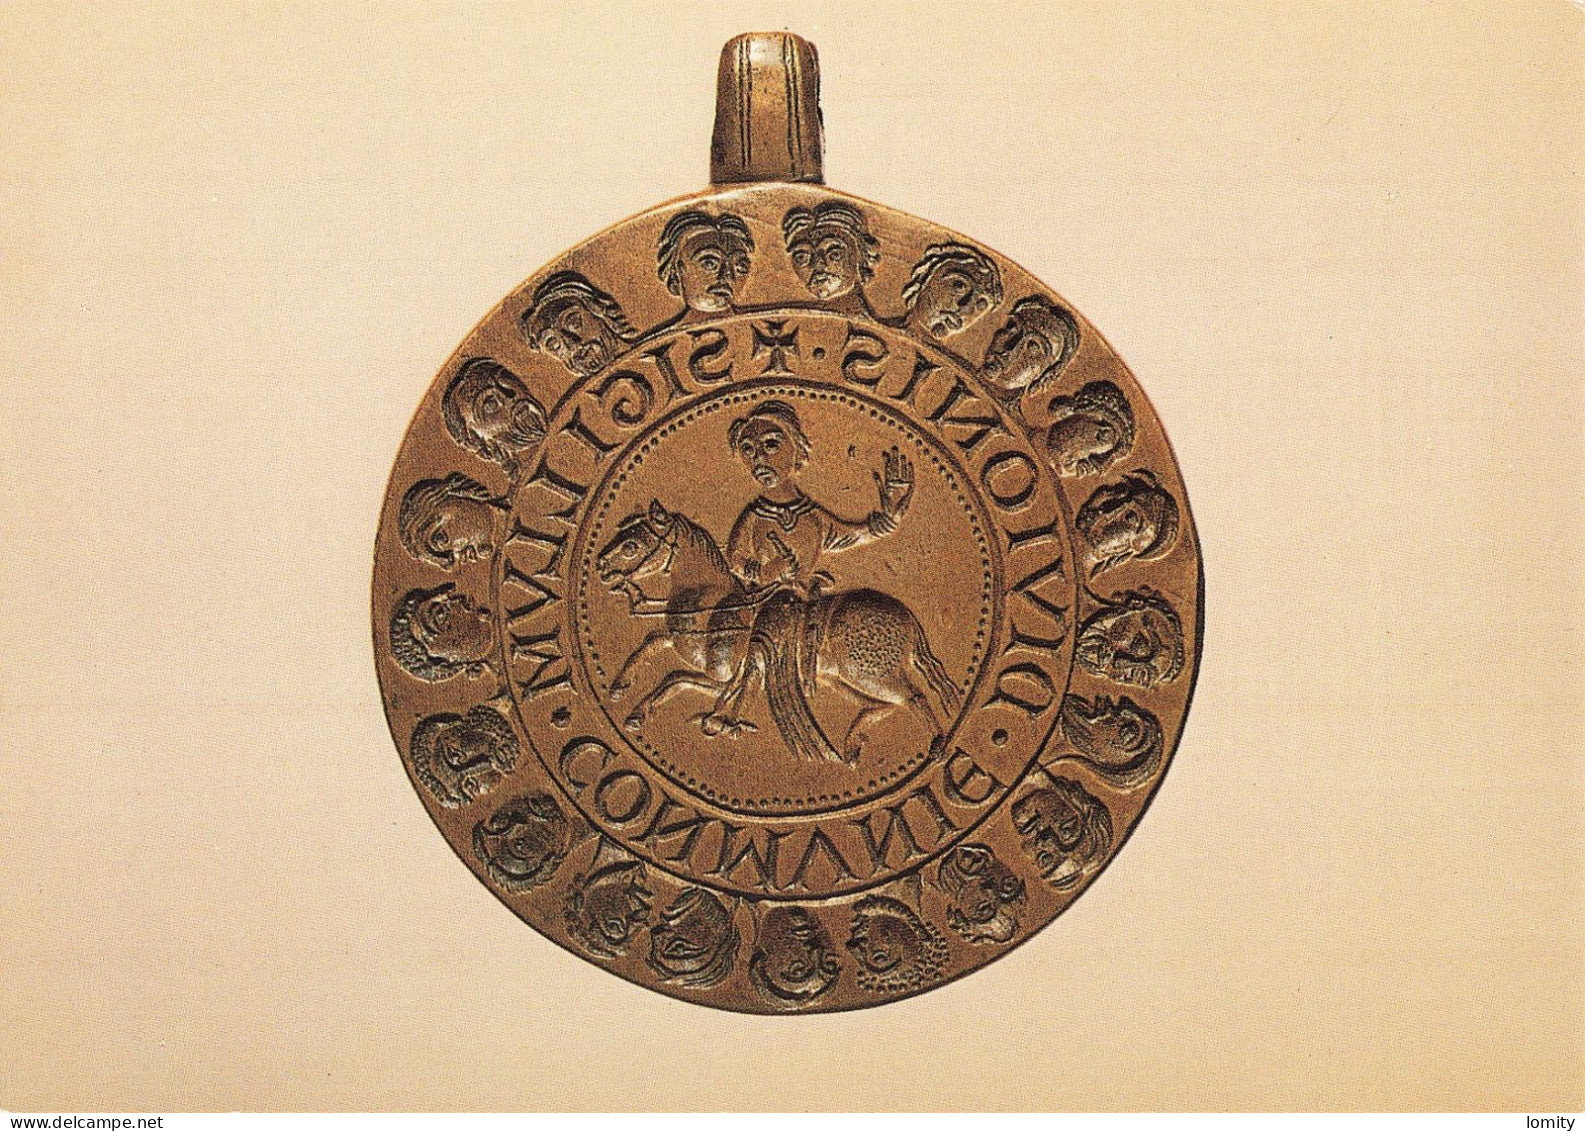 CPM Matrice Du Grand Sceau De La Commune De Dijon Vers 1200 , Bronze, 78 Mm. Bibliothèque Nationale - Münzen (Abb.)